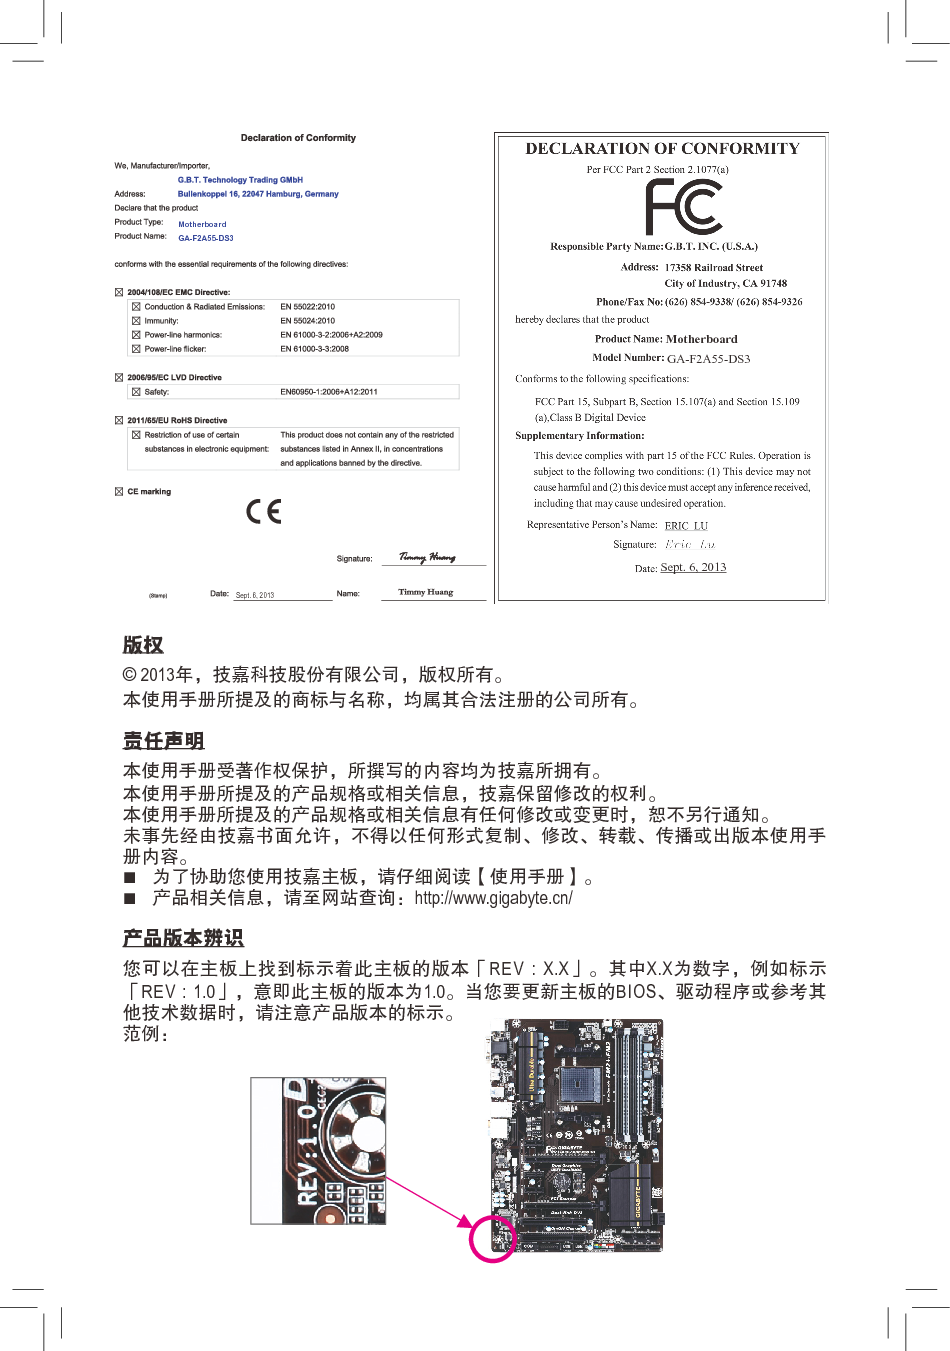 技嘉 Gigabyte GA-F2A55-DS3 3001版 使用说明书 第1页